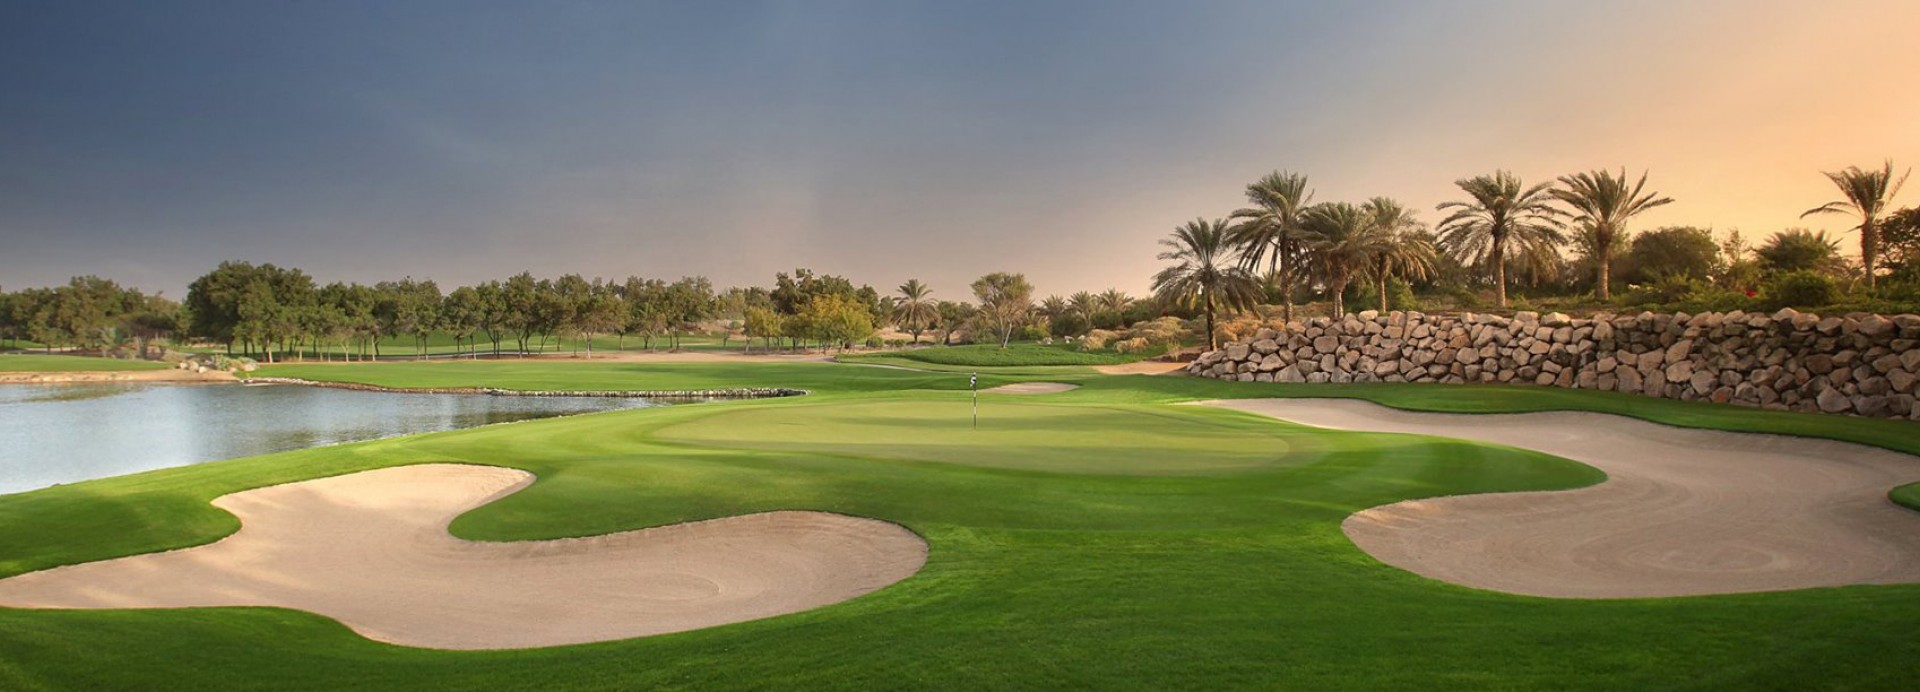 Abu Dhabi Golf Club  | Golfové zájezdy, golfová dovolená, luxusní golf